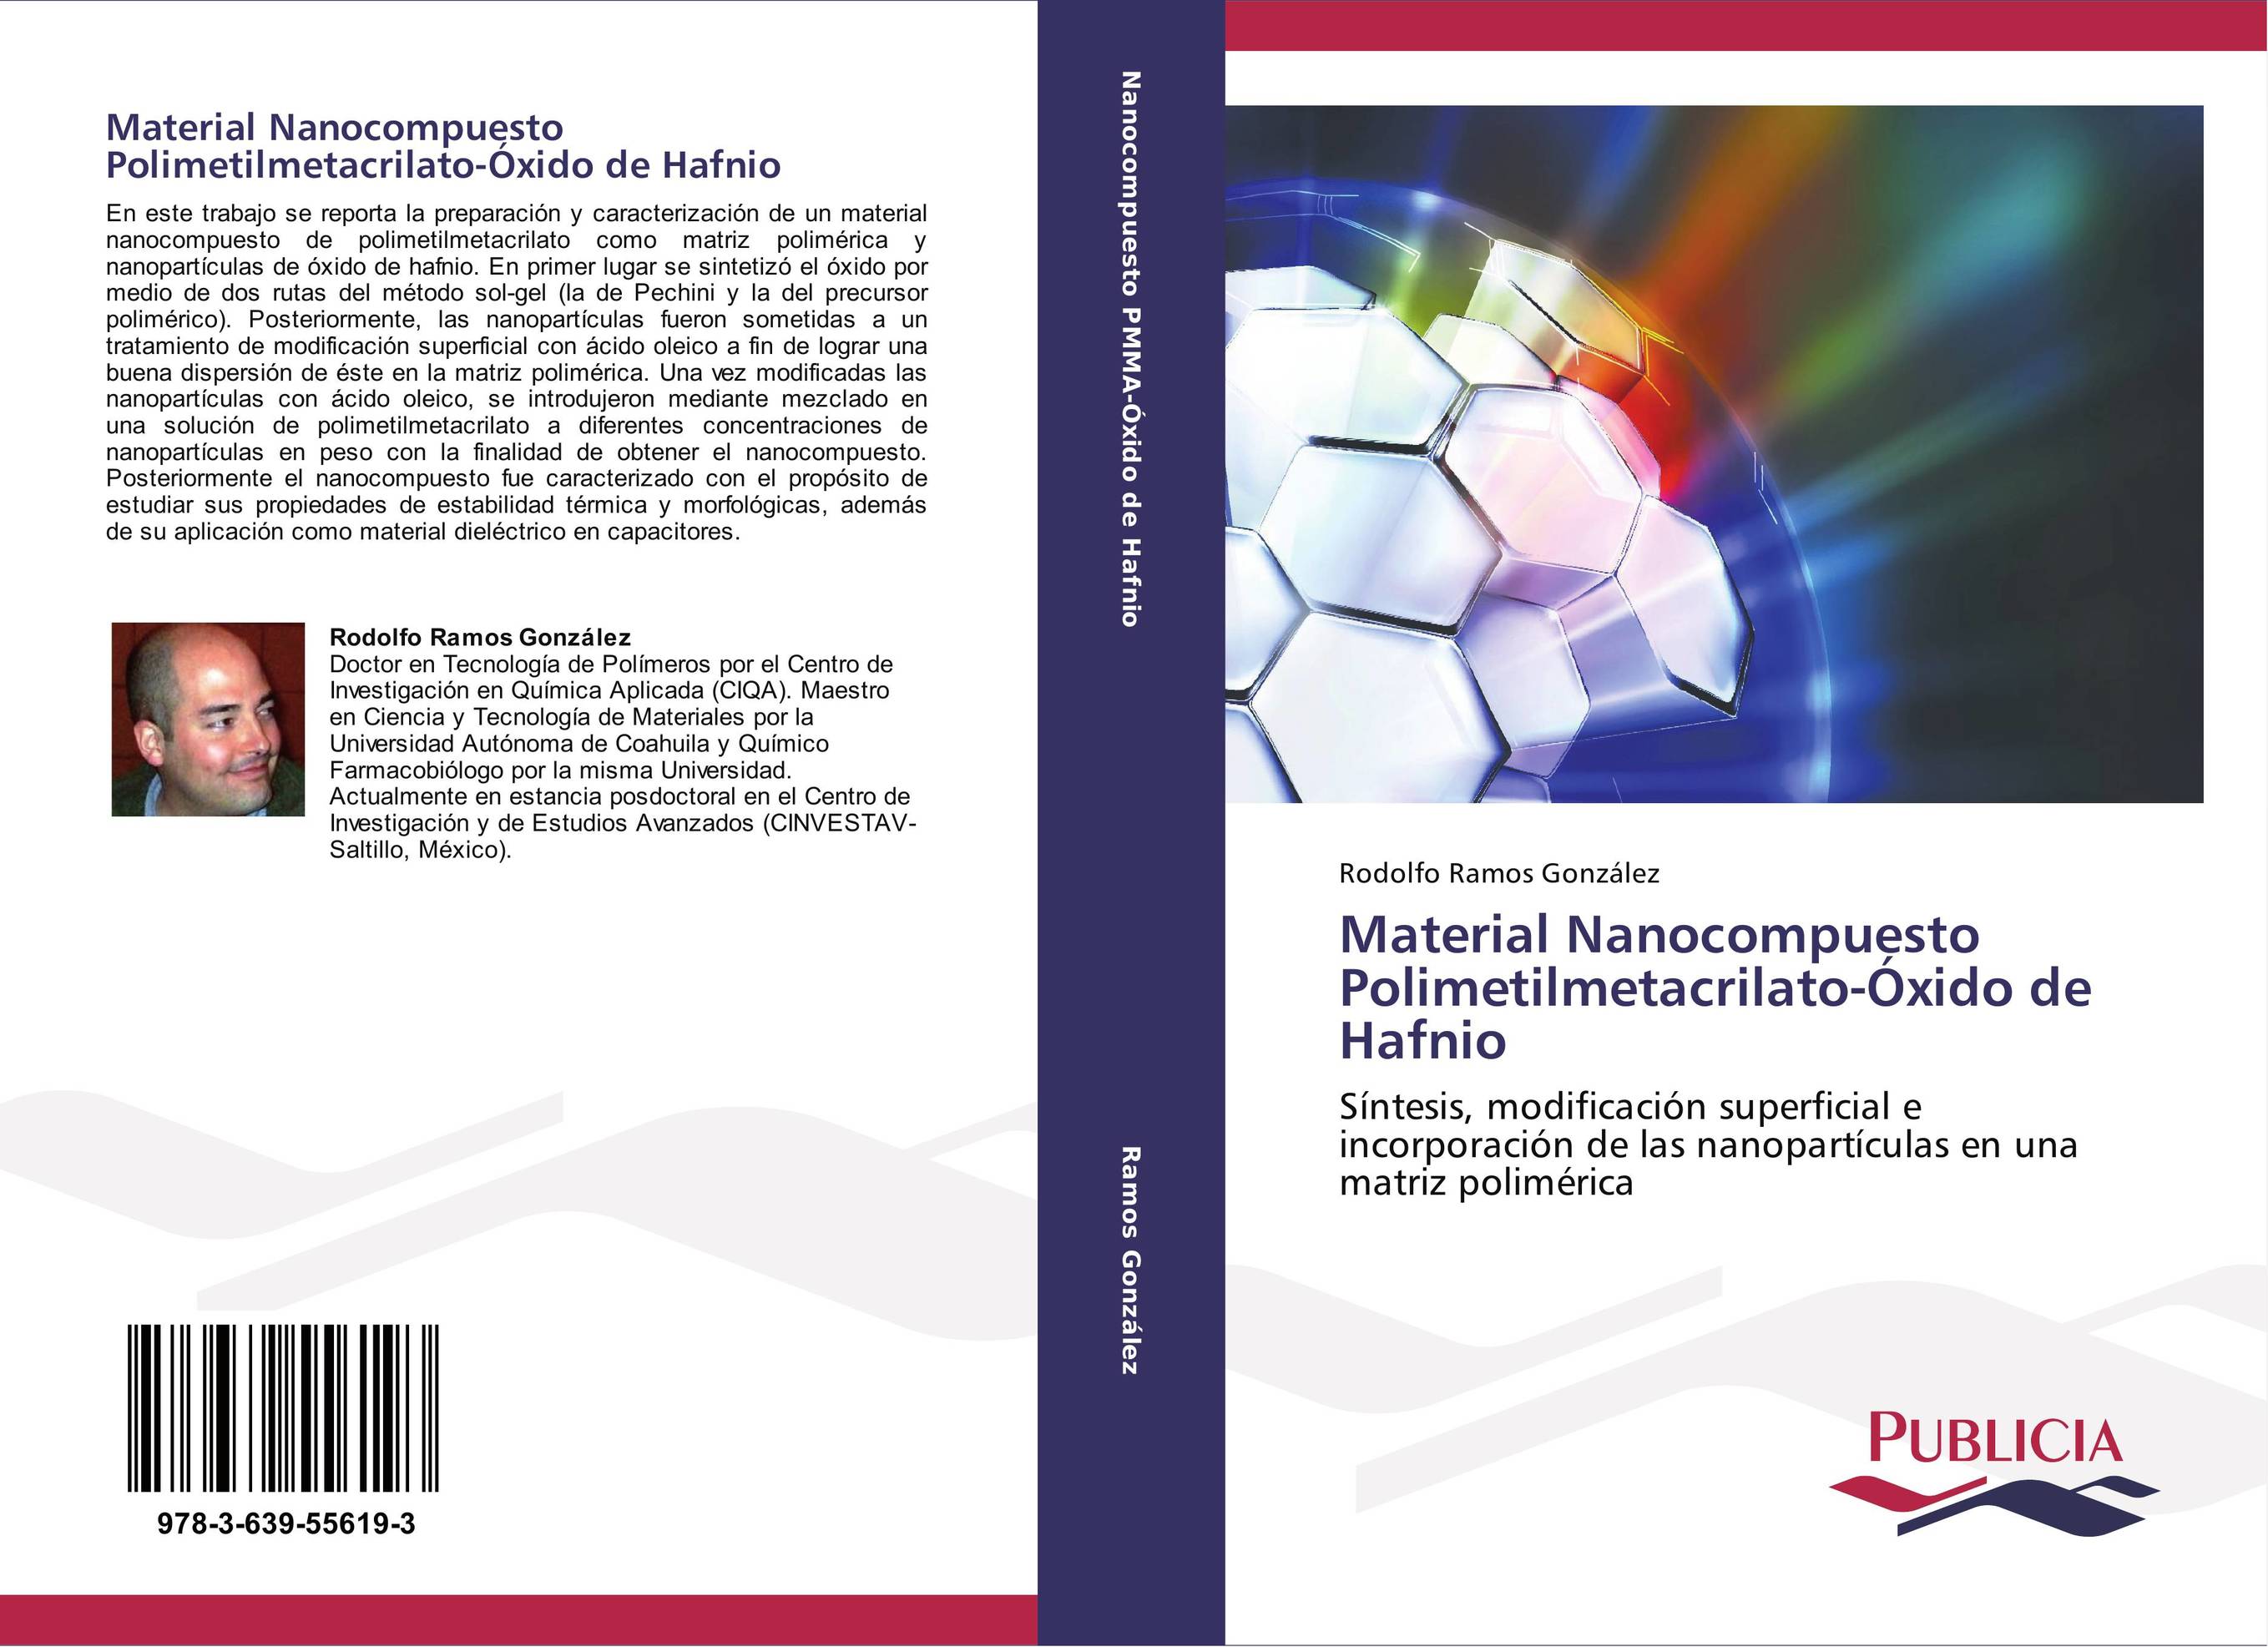 Material Nanocompuesto Polimetilmetacrilato-Óxido de Hafnio